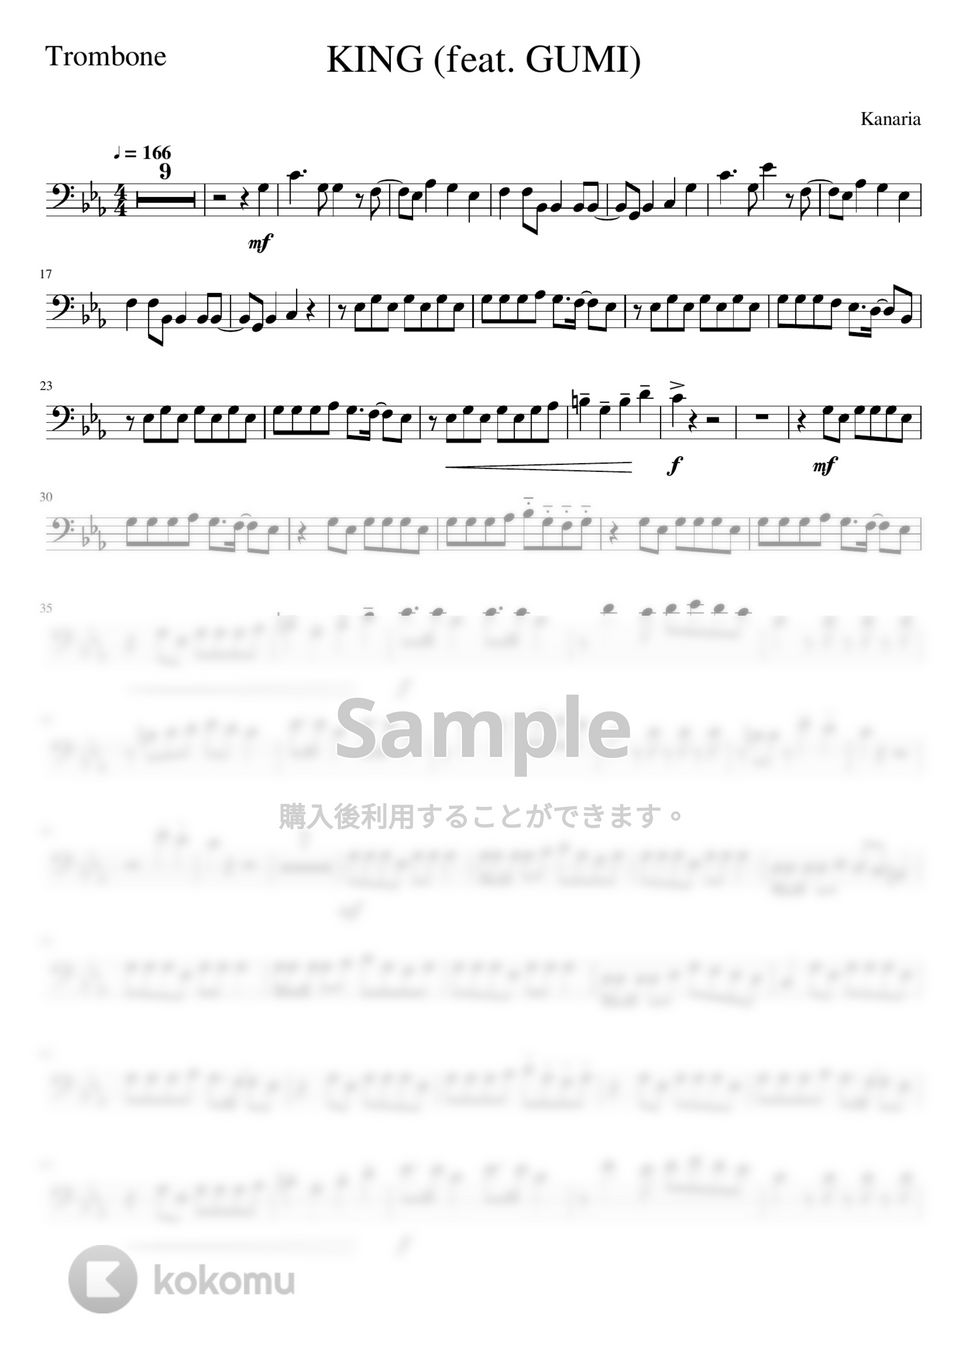 Kanaria - KING (-Trombone Solo- 原キー) by Creampuff